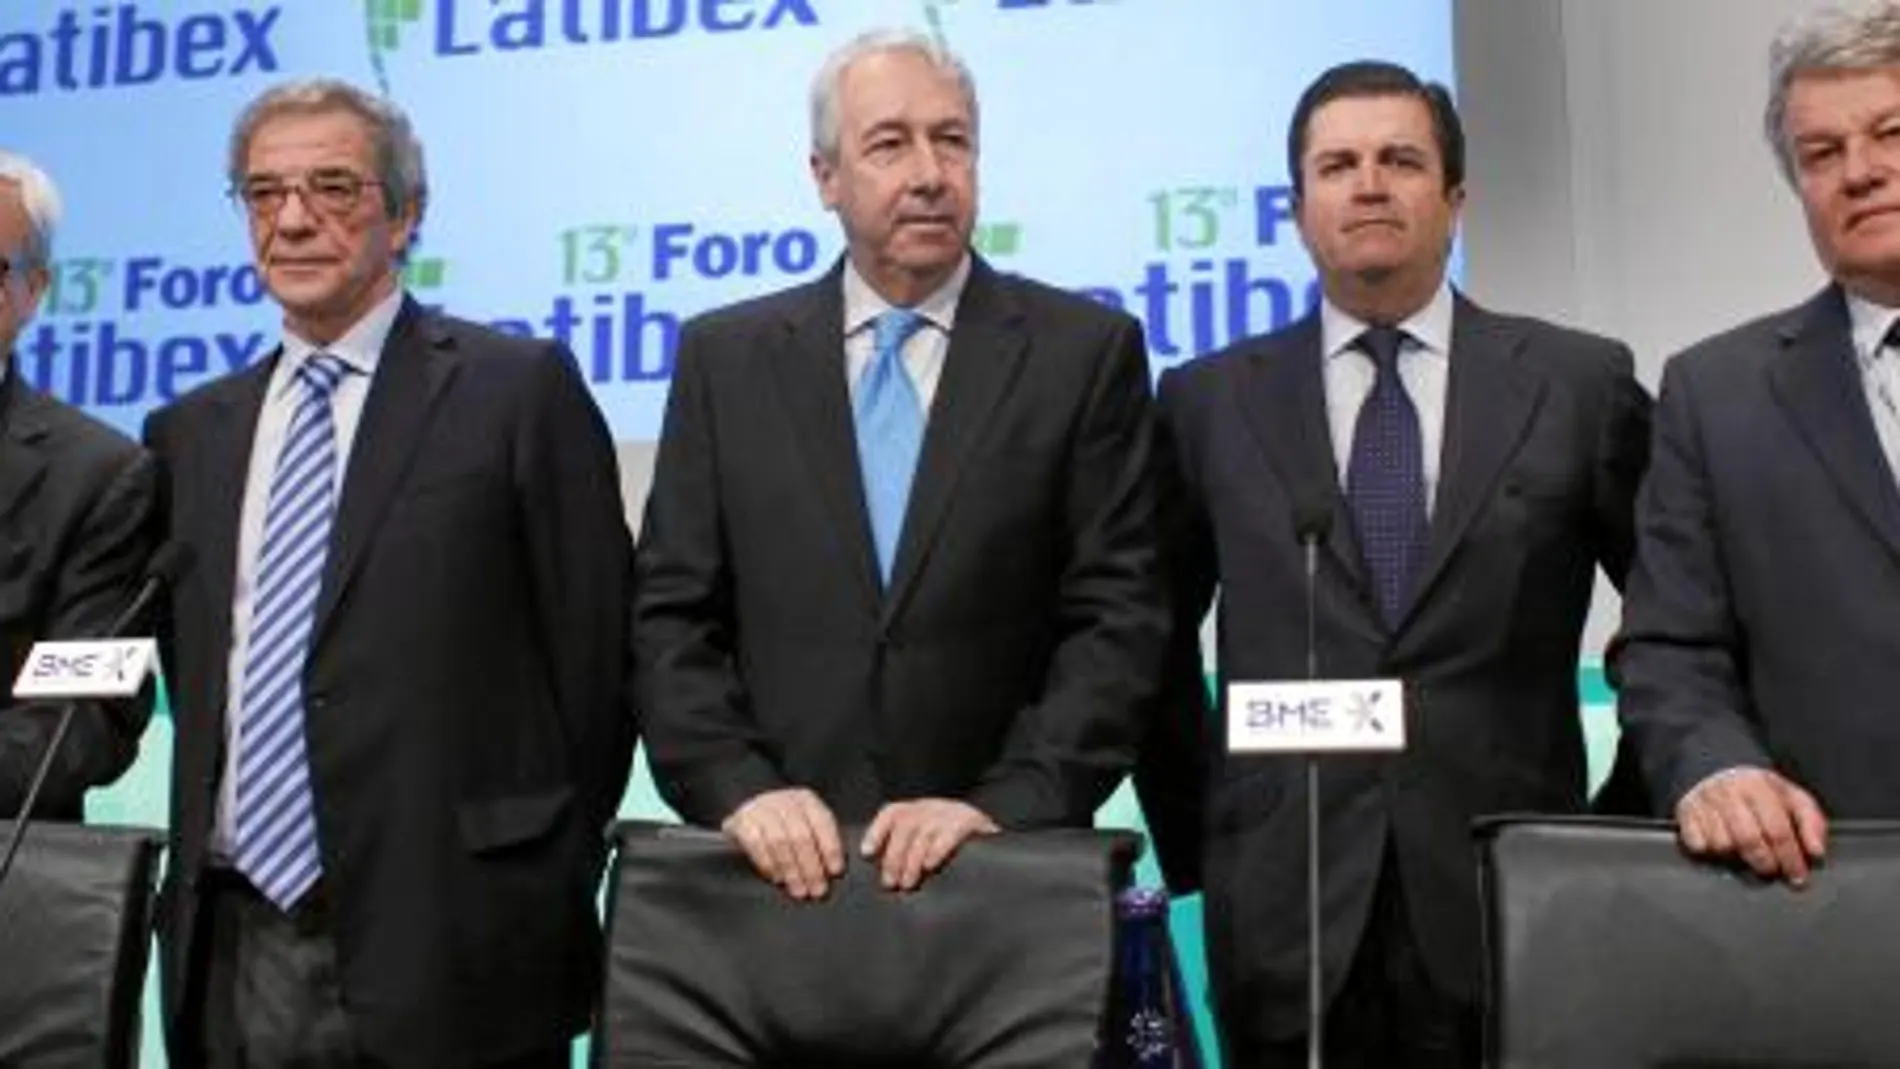 De izq. a dcha., Francisco Luzón, César Alierta, Antonio Zoido, Borja Prado y José da Costa Carvalho